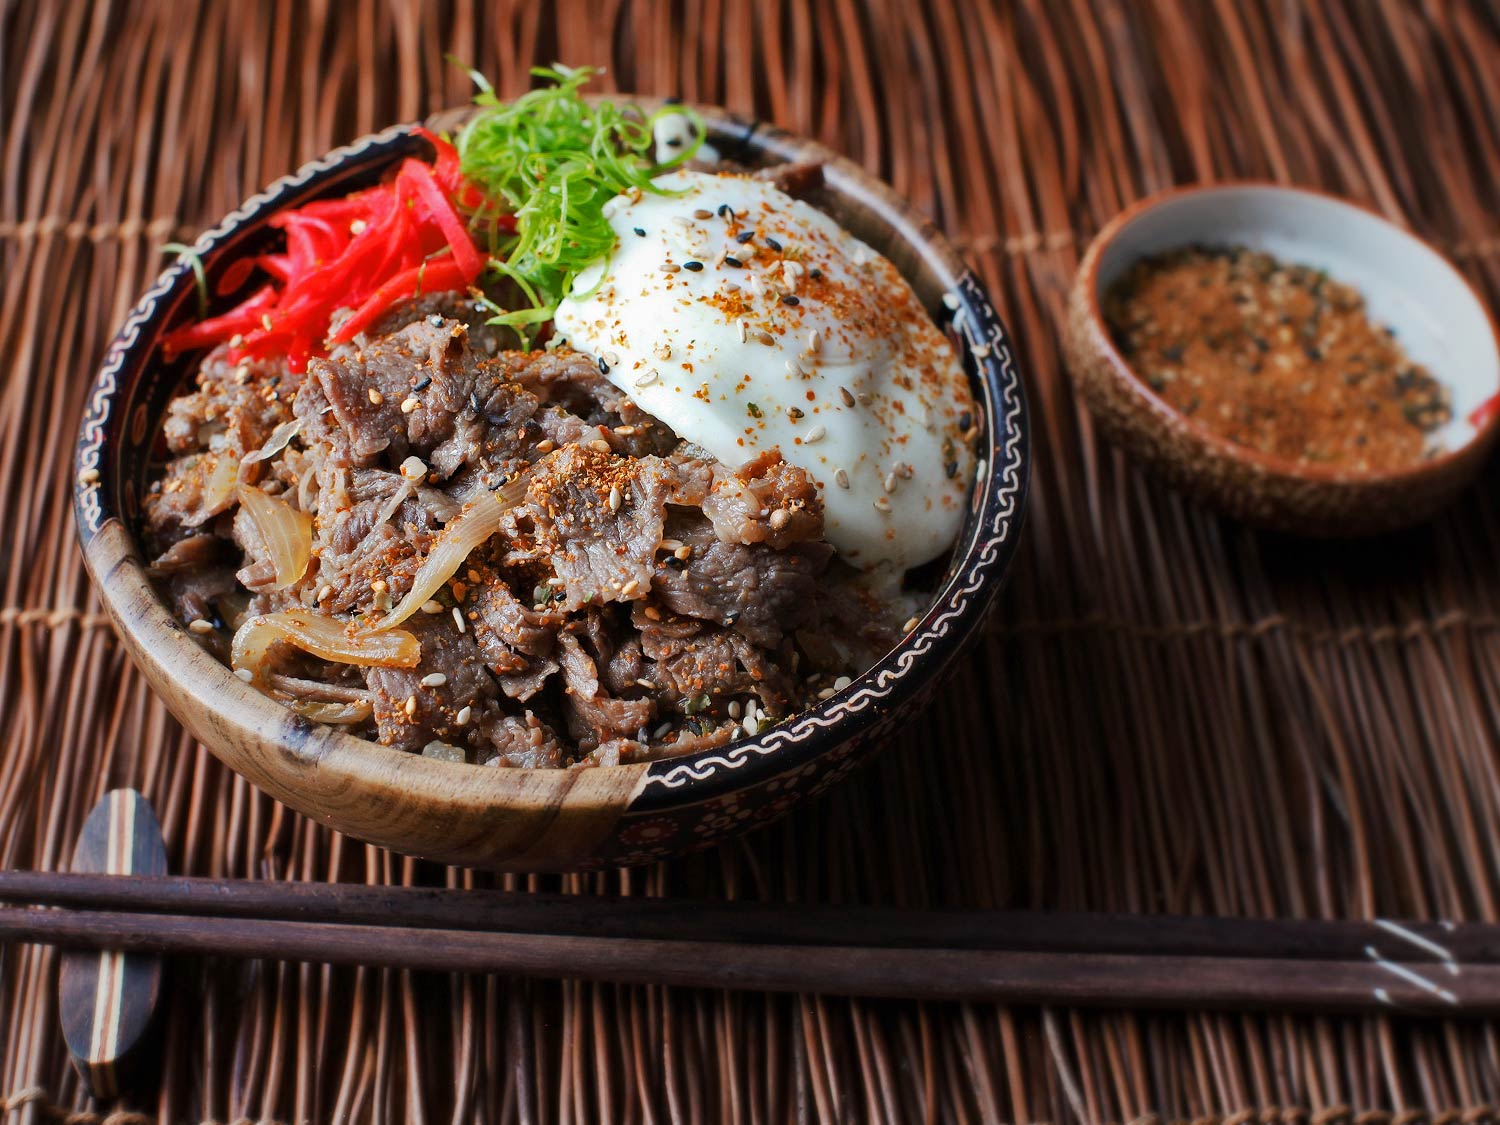 Гюдон (Японская миска с рисом и тушенной говядиной)